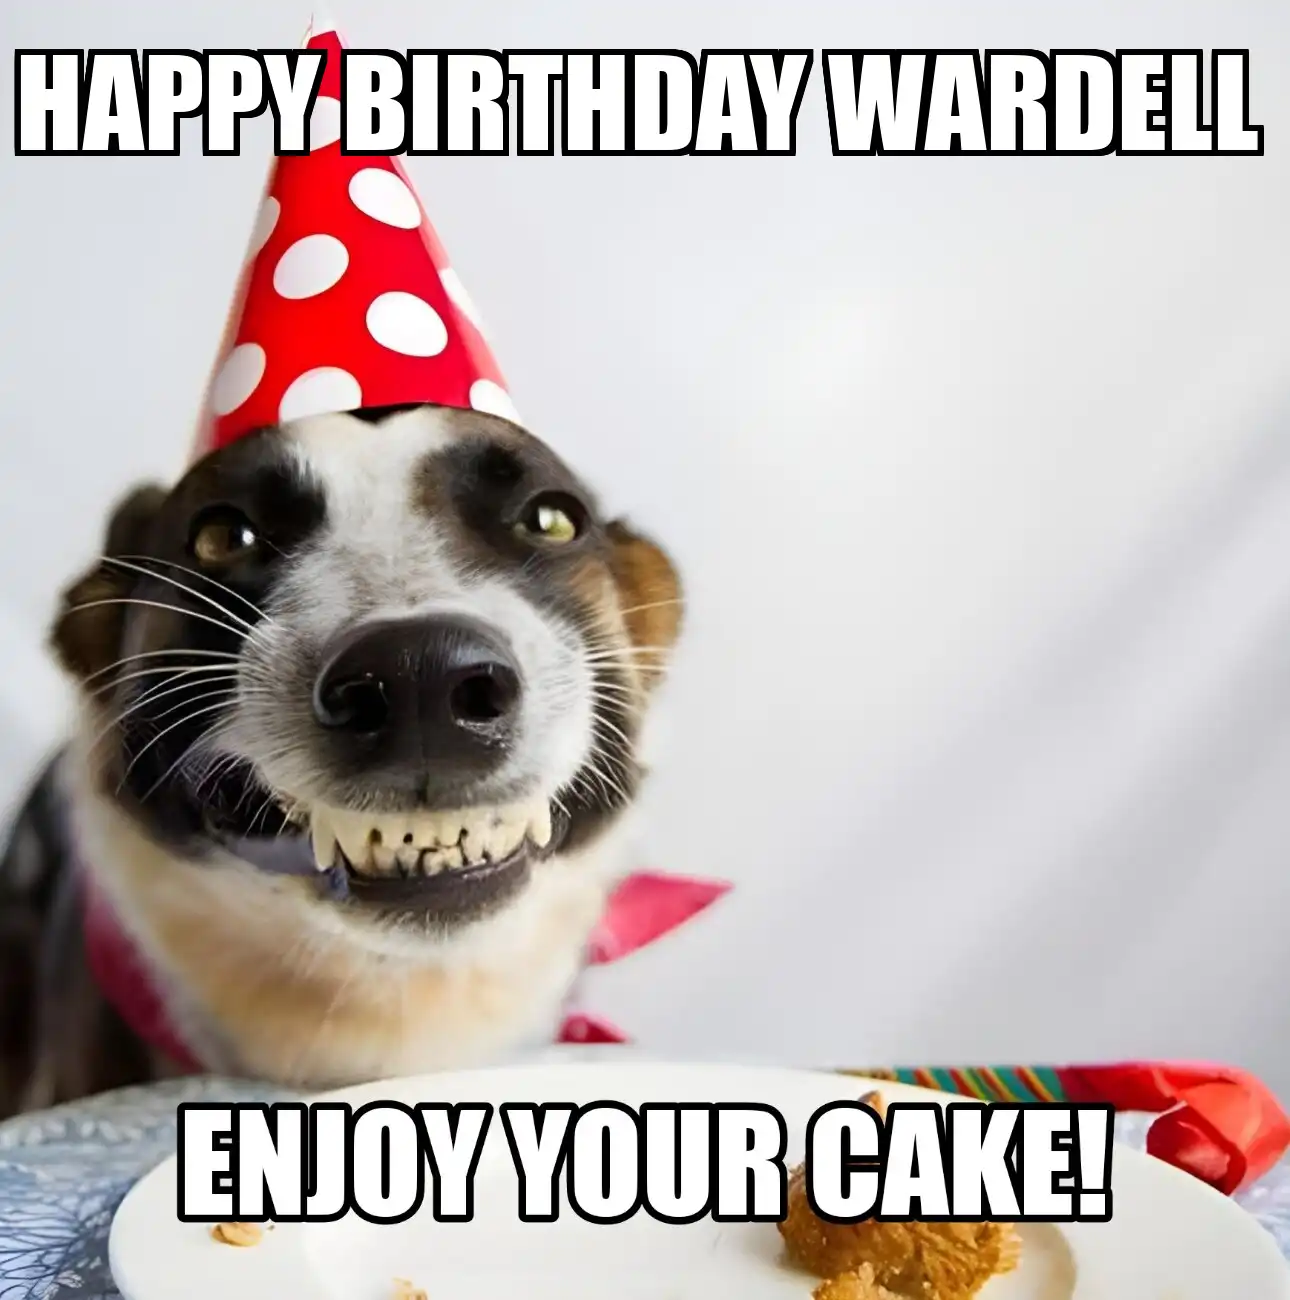 Happy Birthday Wardell Enjoy Your Cake Dog Meme